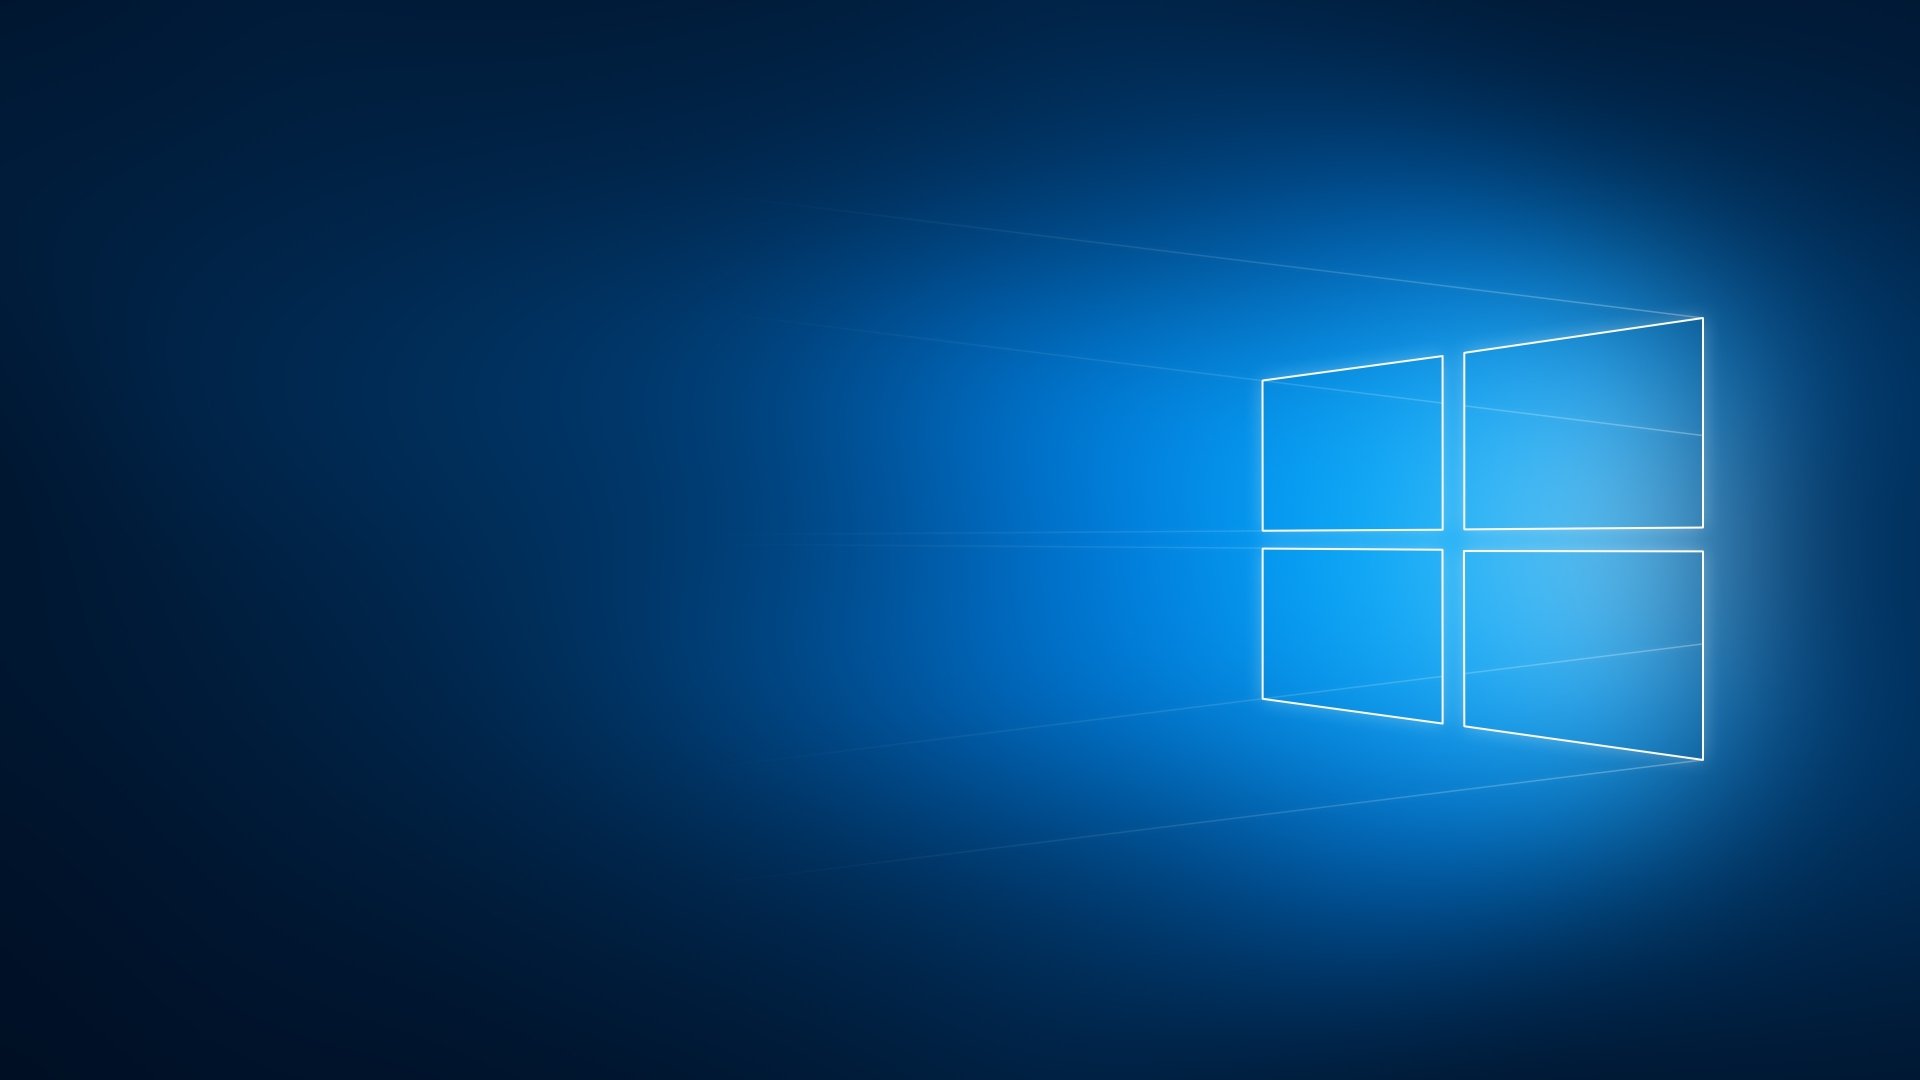 Bạn muốn tìm kiếm một hình nền Windows 10 4k Ultra HD tuyệt đẹp? Hãy đến với chúng tôi! Các hình ảnh đầy màu sắc và sắc nét này sẽ làm cho màn hình máy tính của bạn trở nên thật tuyệt vời và nổi bật. Hãy để sự độc đáo và sáng tạo của các họa sĩ của chúng tôi mang đến trải nghiệm đặc biệt cho bạn. Hãy cùng chúng tôi tìm kiếm bức tranh đẹp cho desktop của bạn!